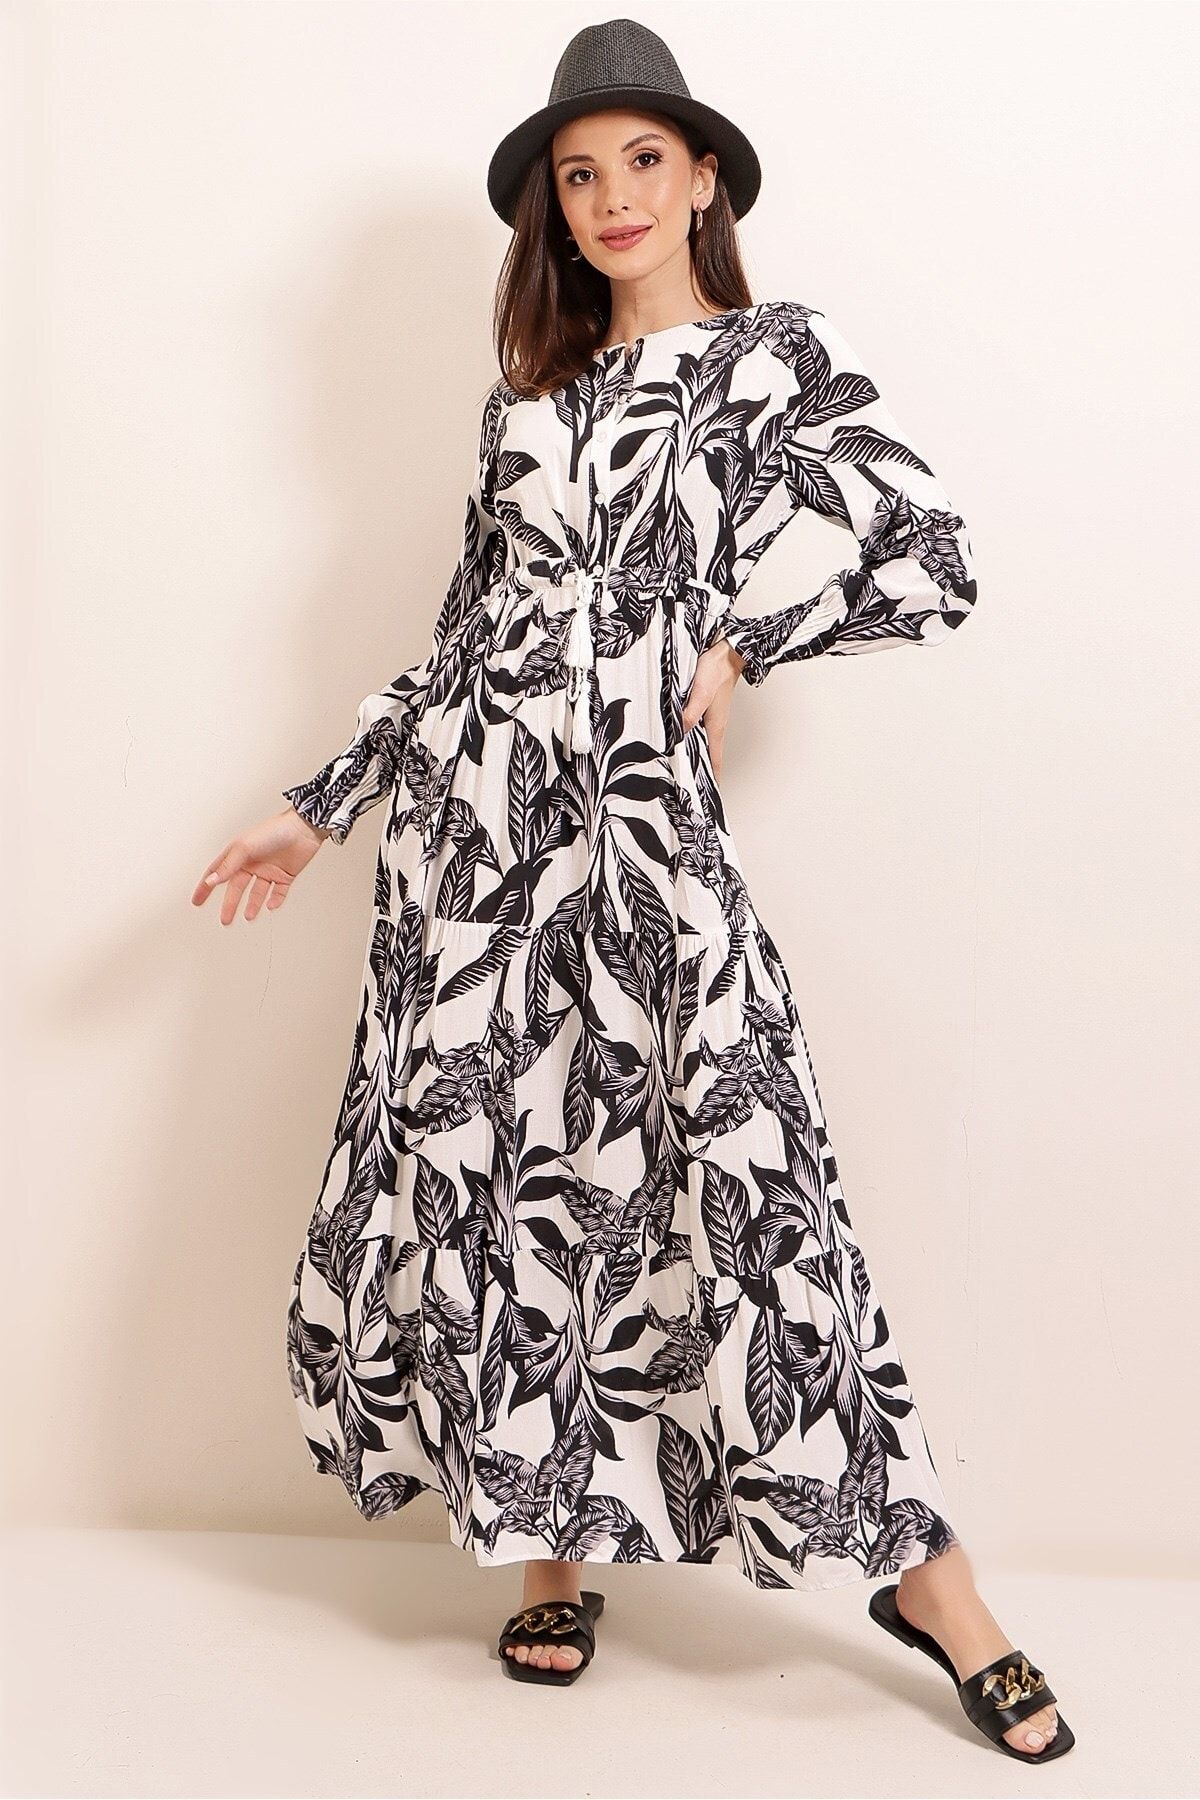 By Saygı Önü Yarım Düğmeli Kolu Büzgülü Yaprak Desen Uzun Viskon Elbise Geniş Beden Aralığı Mint